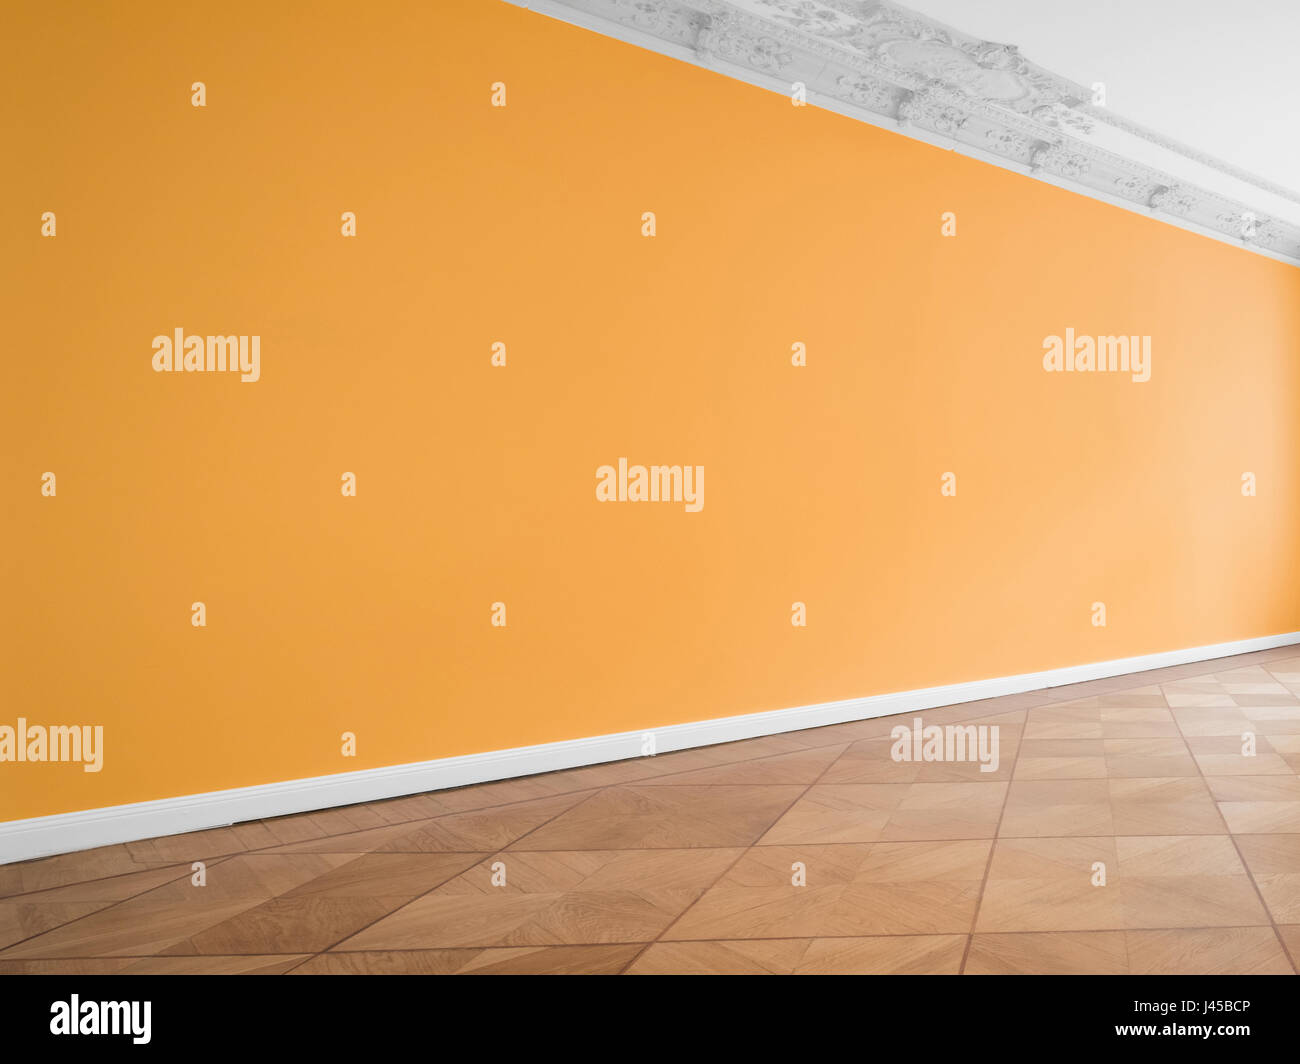 Wall background en salle vide avec plancher en bois Banque D'Images